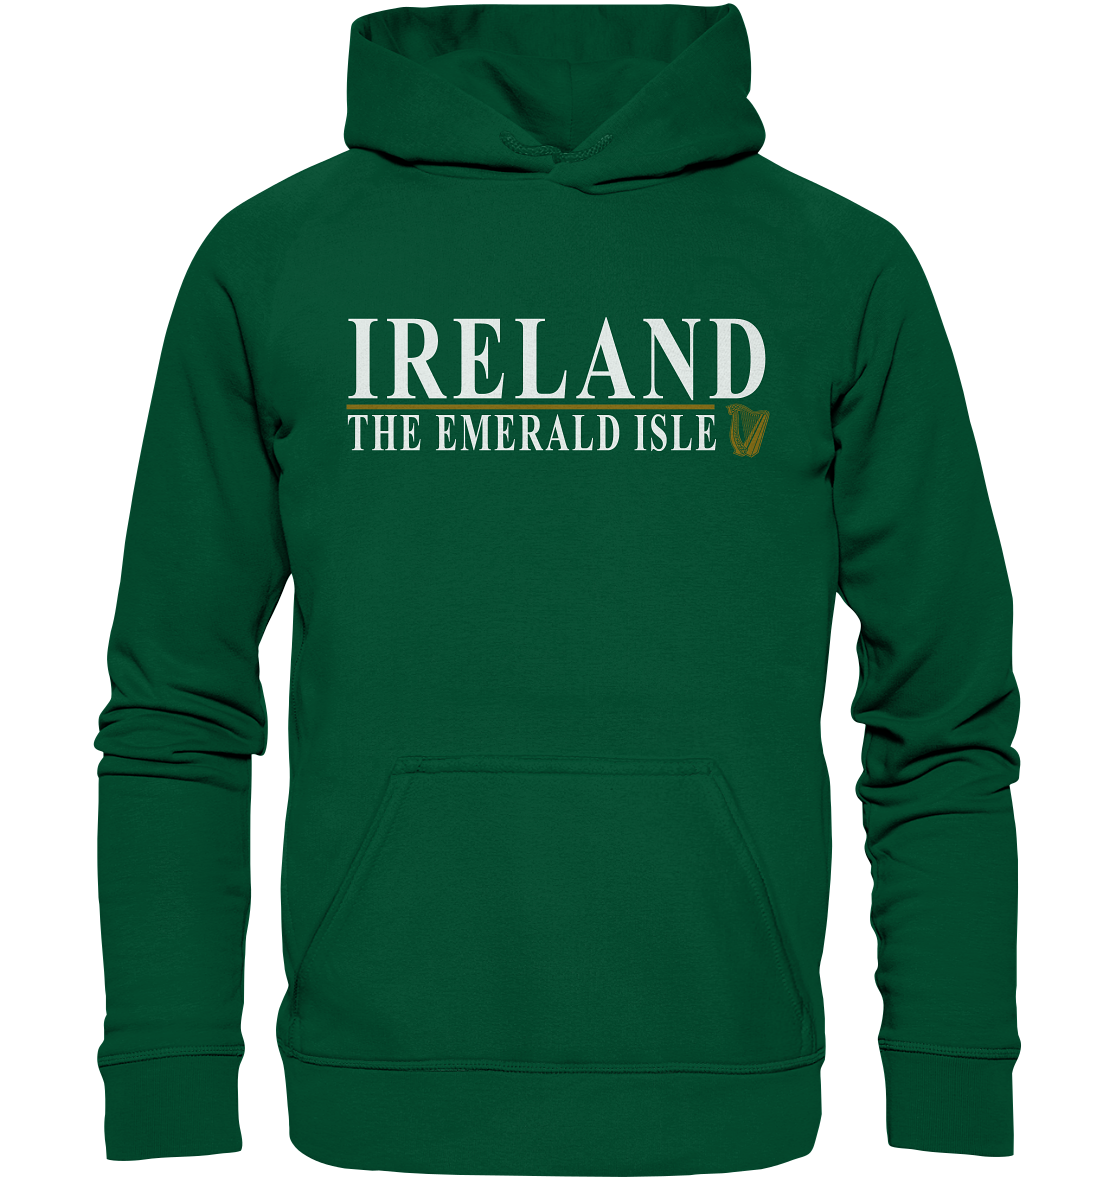 Ireland "The Emerald Isle" - Basic Unisex Hoodie